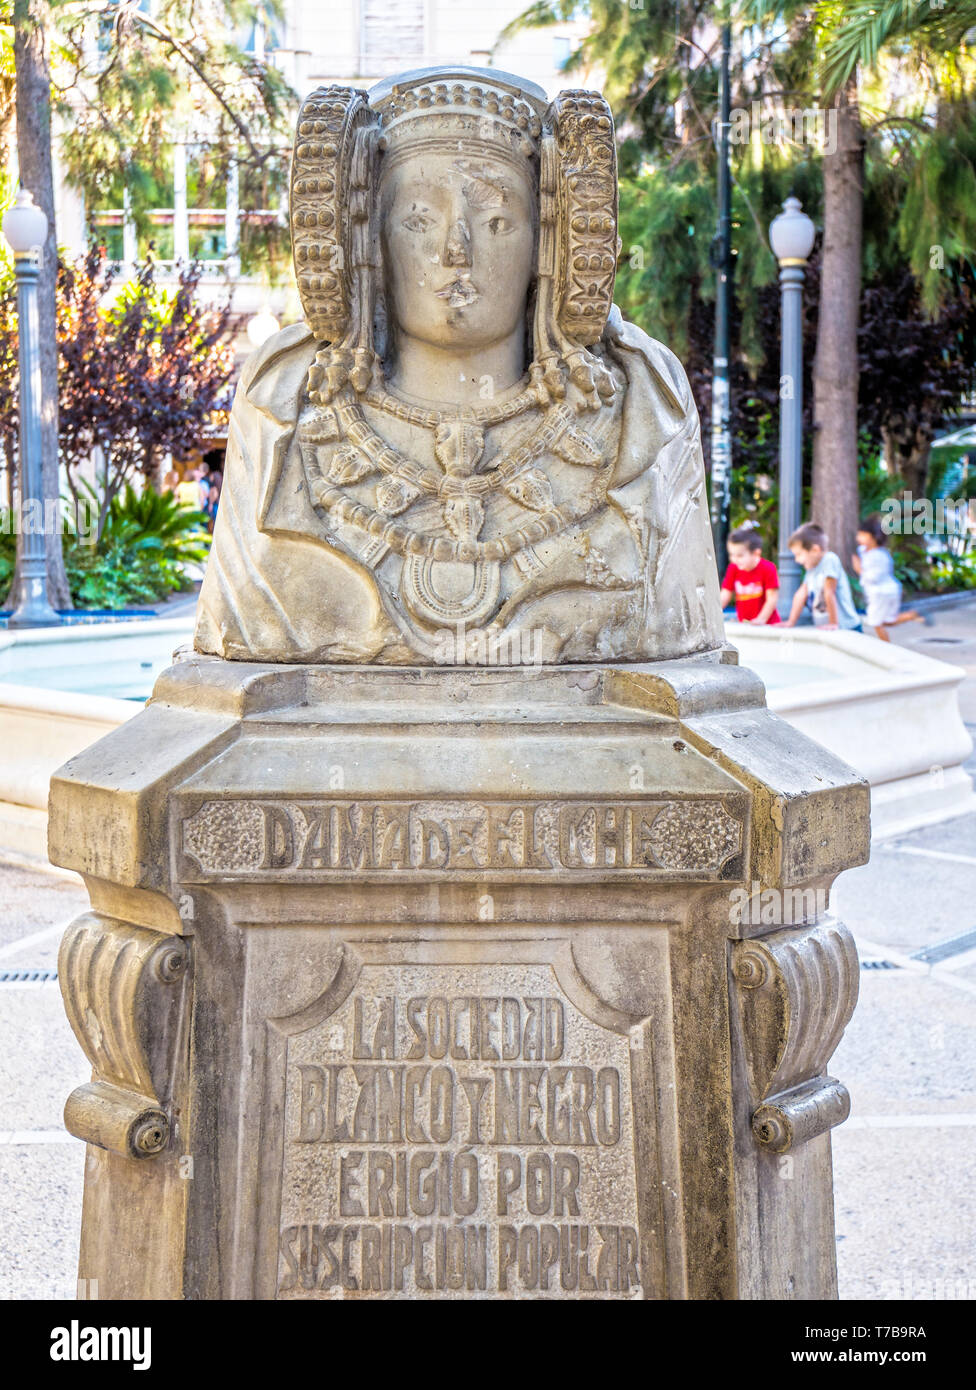 Reproducción de la dama de Elche en un parque. Elche. Alicante. Comunidad Valenciana. España Stock Photo